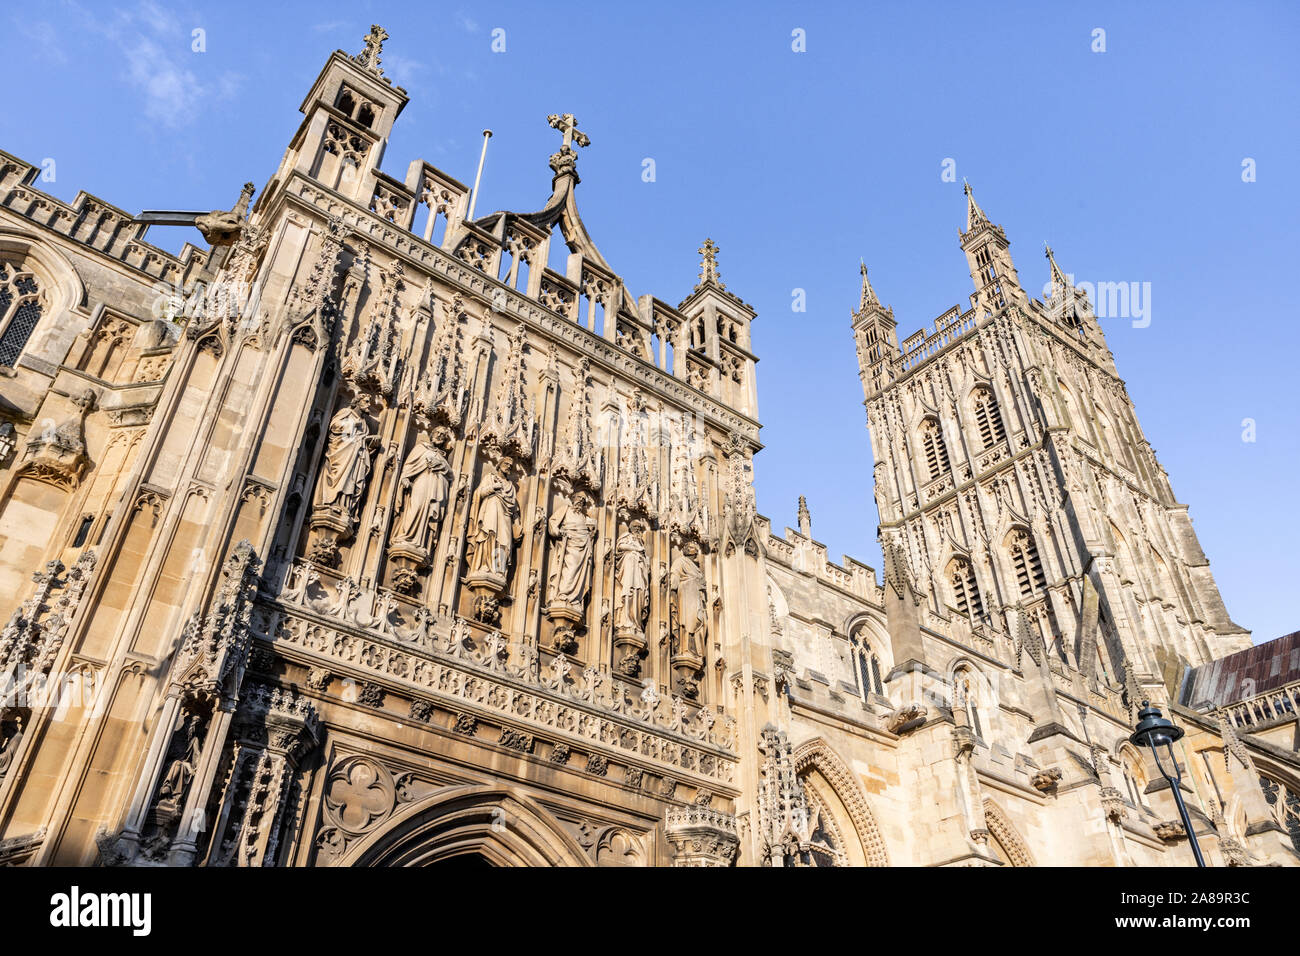 Le porche magnifiquement sculptés et décorés xve siècle tour de la cathédrale de Gloucester, Gloucester UK vue contre un ciel bleu. Banque D'Images